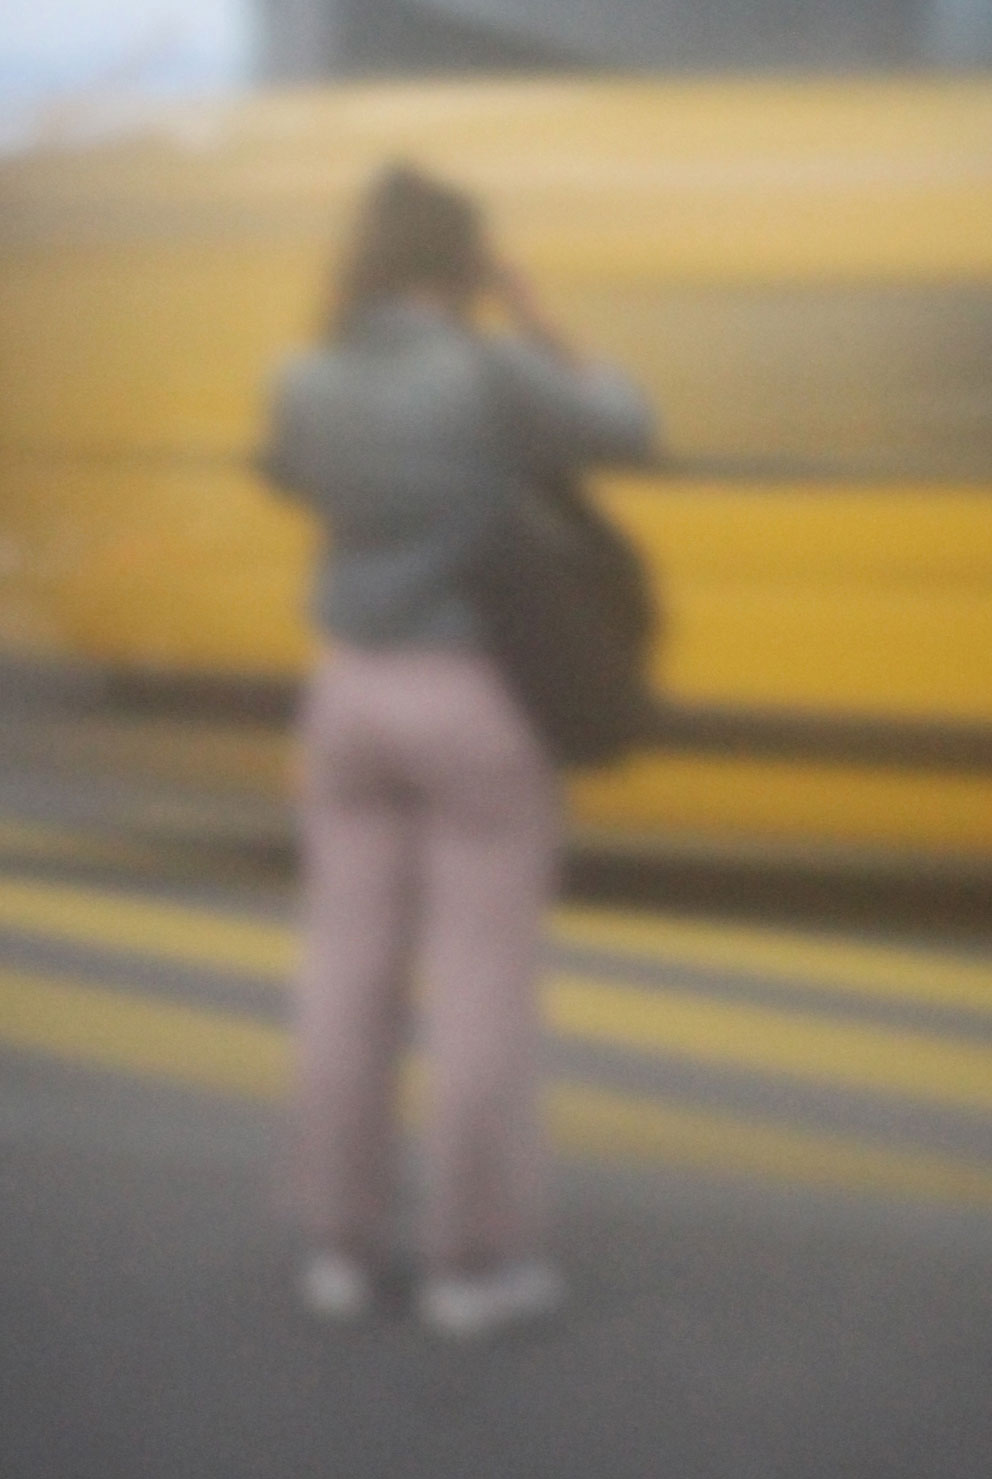 30 „Gelber Bus“, 2021, Bern, Camera Obscura, Pigmentdruck auf Alu-Dibond